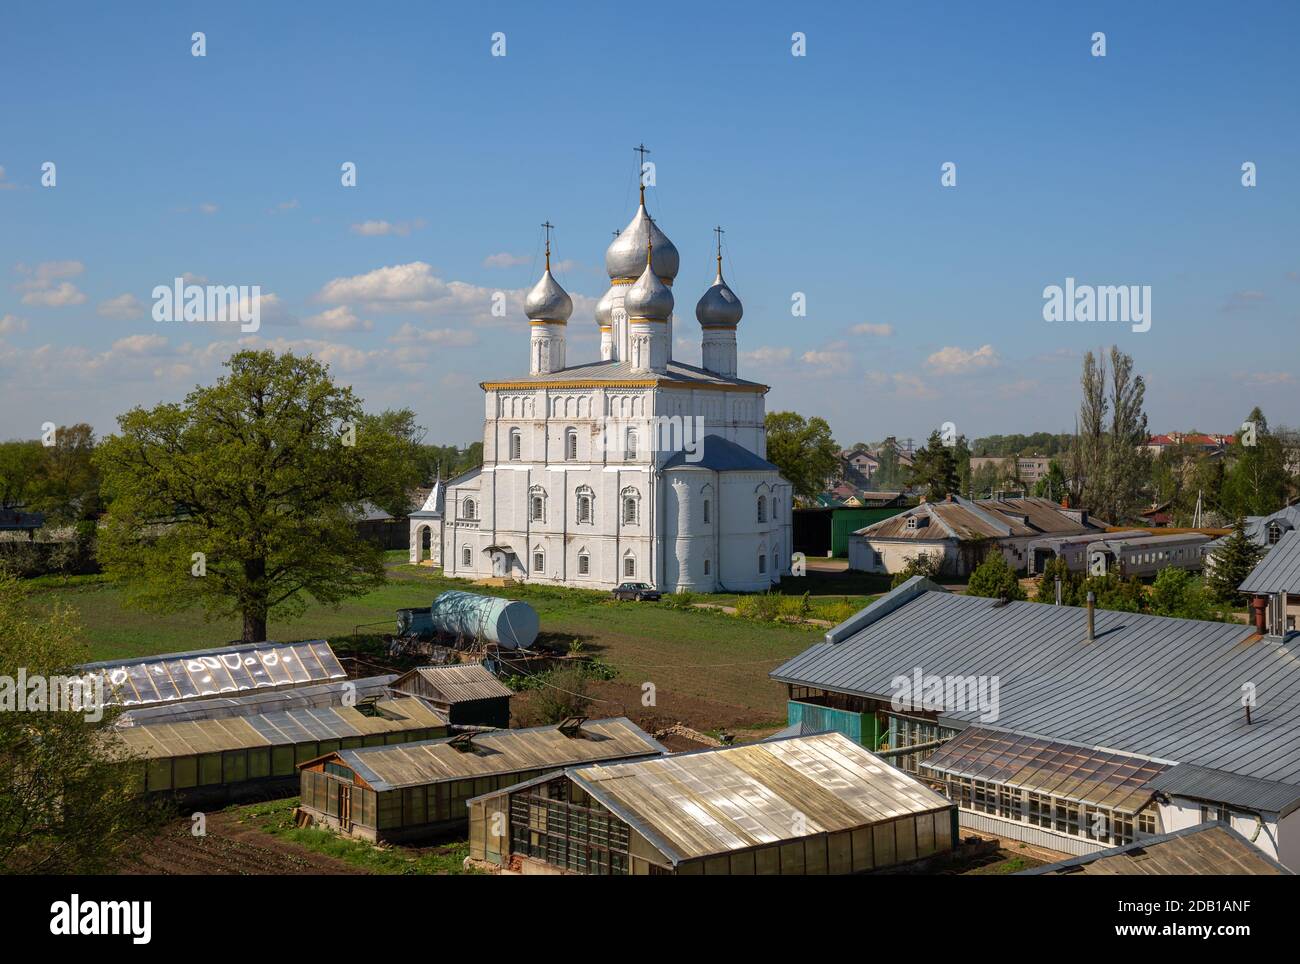 Monastère de Spaso-Yakovlevsky. Église de la Transfiguration du Sauveur et la cour du monastère. Rostov Veliky, anneau d'or de la Russie Banque D'Images